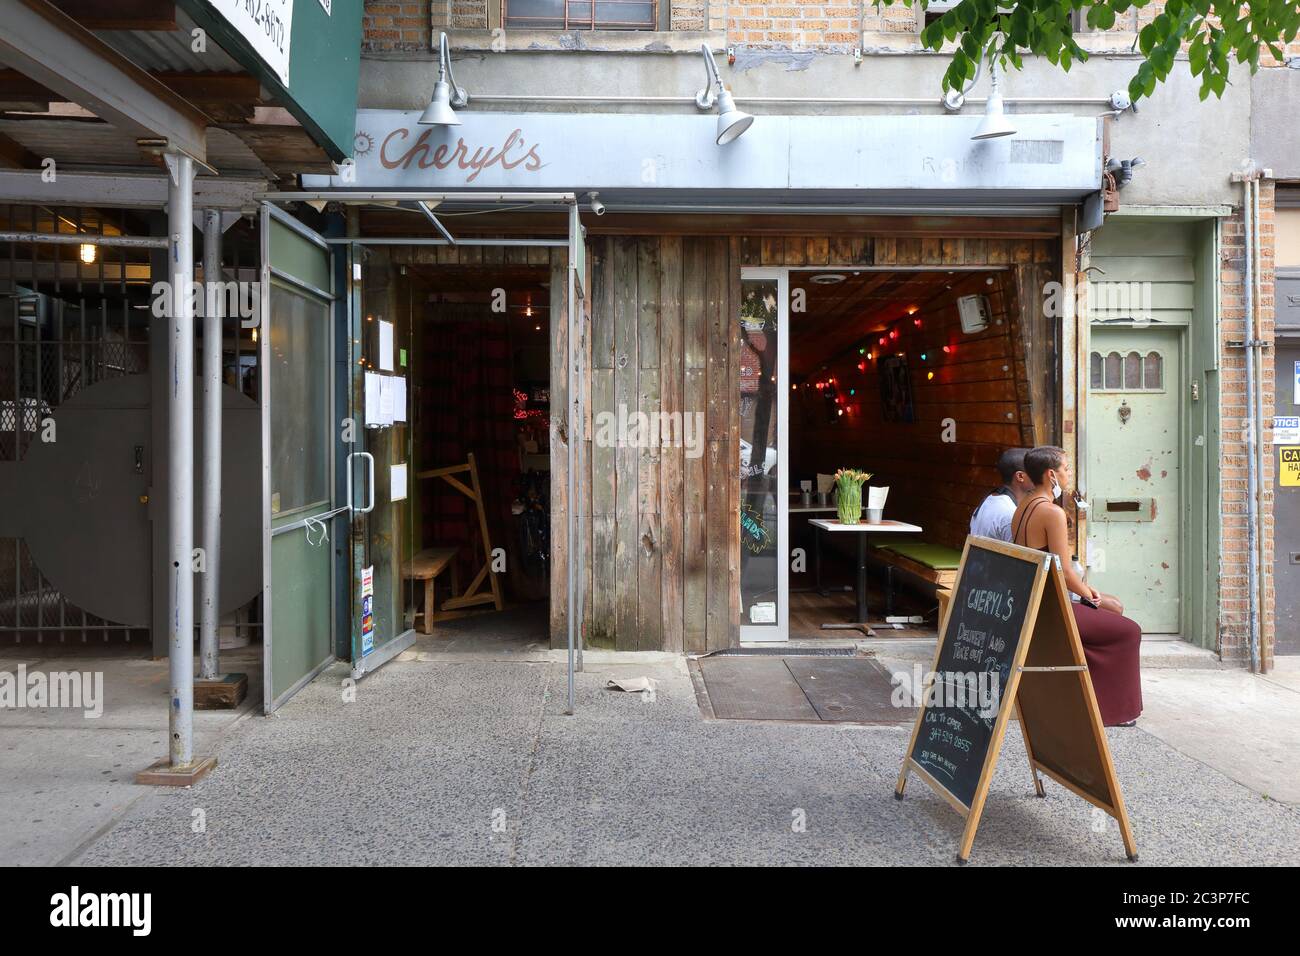 Cheryl's Global Soul, 236 Underhill Ave, Brooklyn, Nueva York, foto del escaparate de un restaurante de comida Soul en el barrio de Prospect Heights. Foto de stock